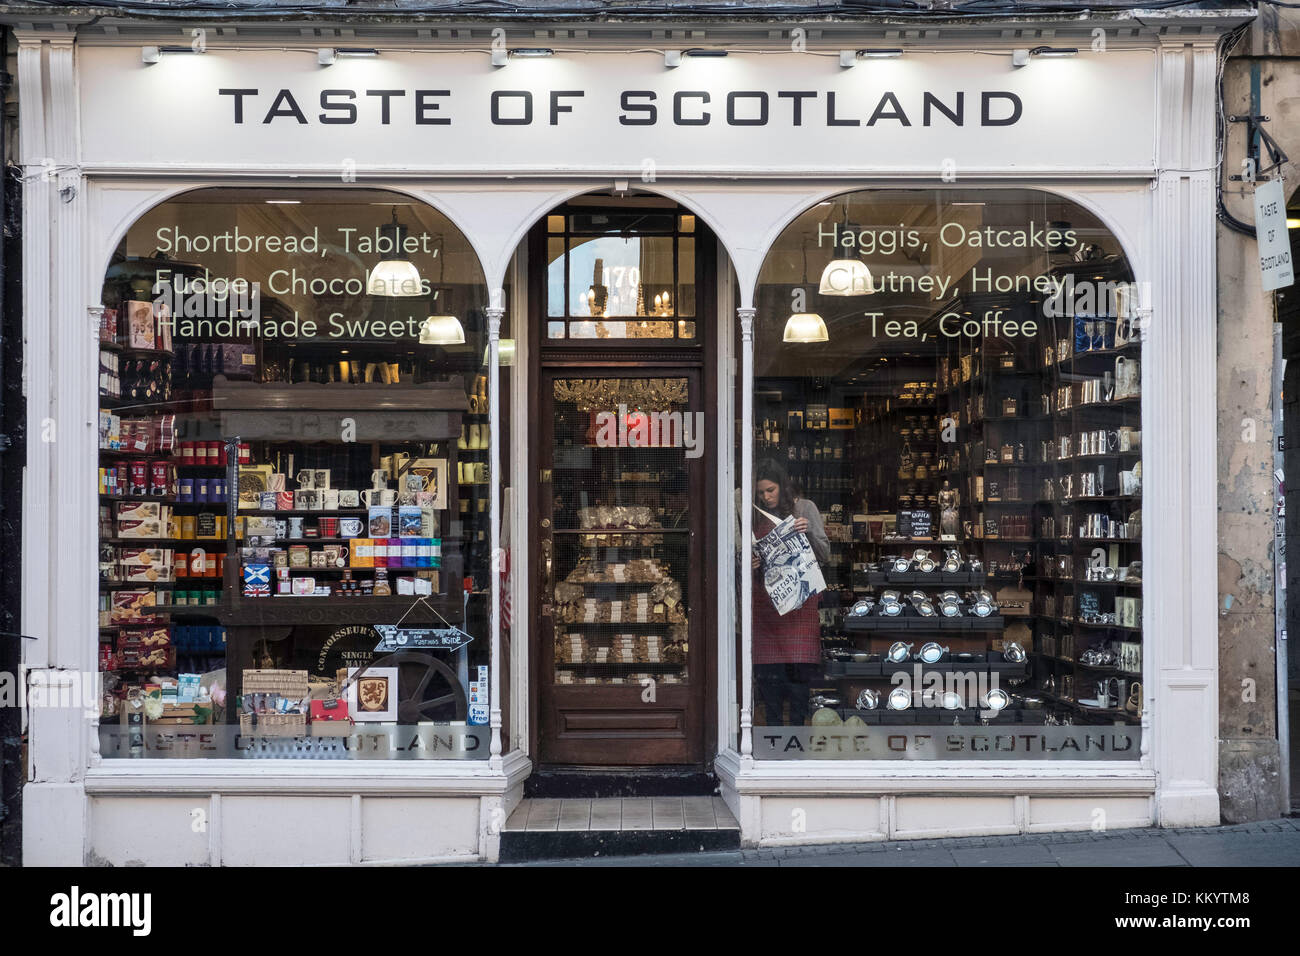 Taste of Scotland Shop vendant de la nourriture et d'autres produits fabriqués en Écosse dans la vieille ville d'Édimbourg, en Écosse, au Royaume-Uni. Banque D'Images